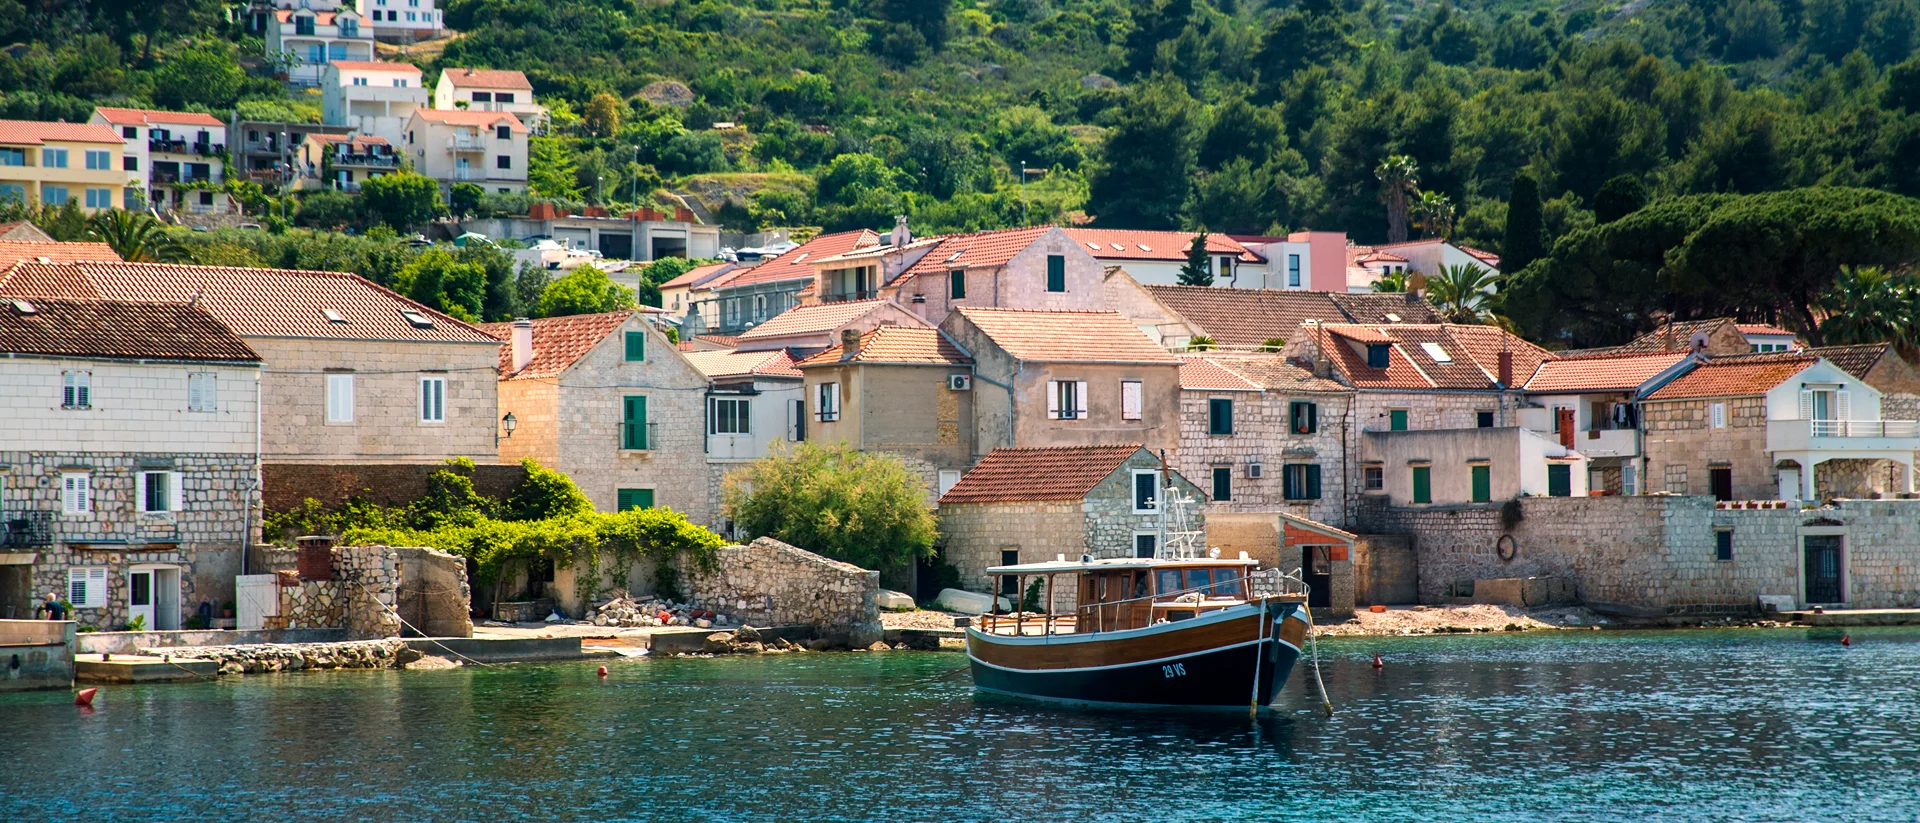 Croatia village marina bay with yacht